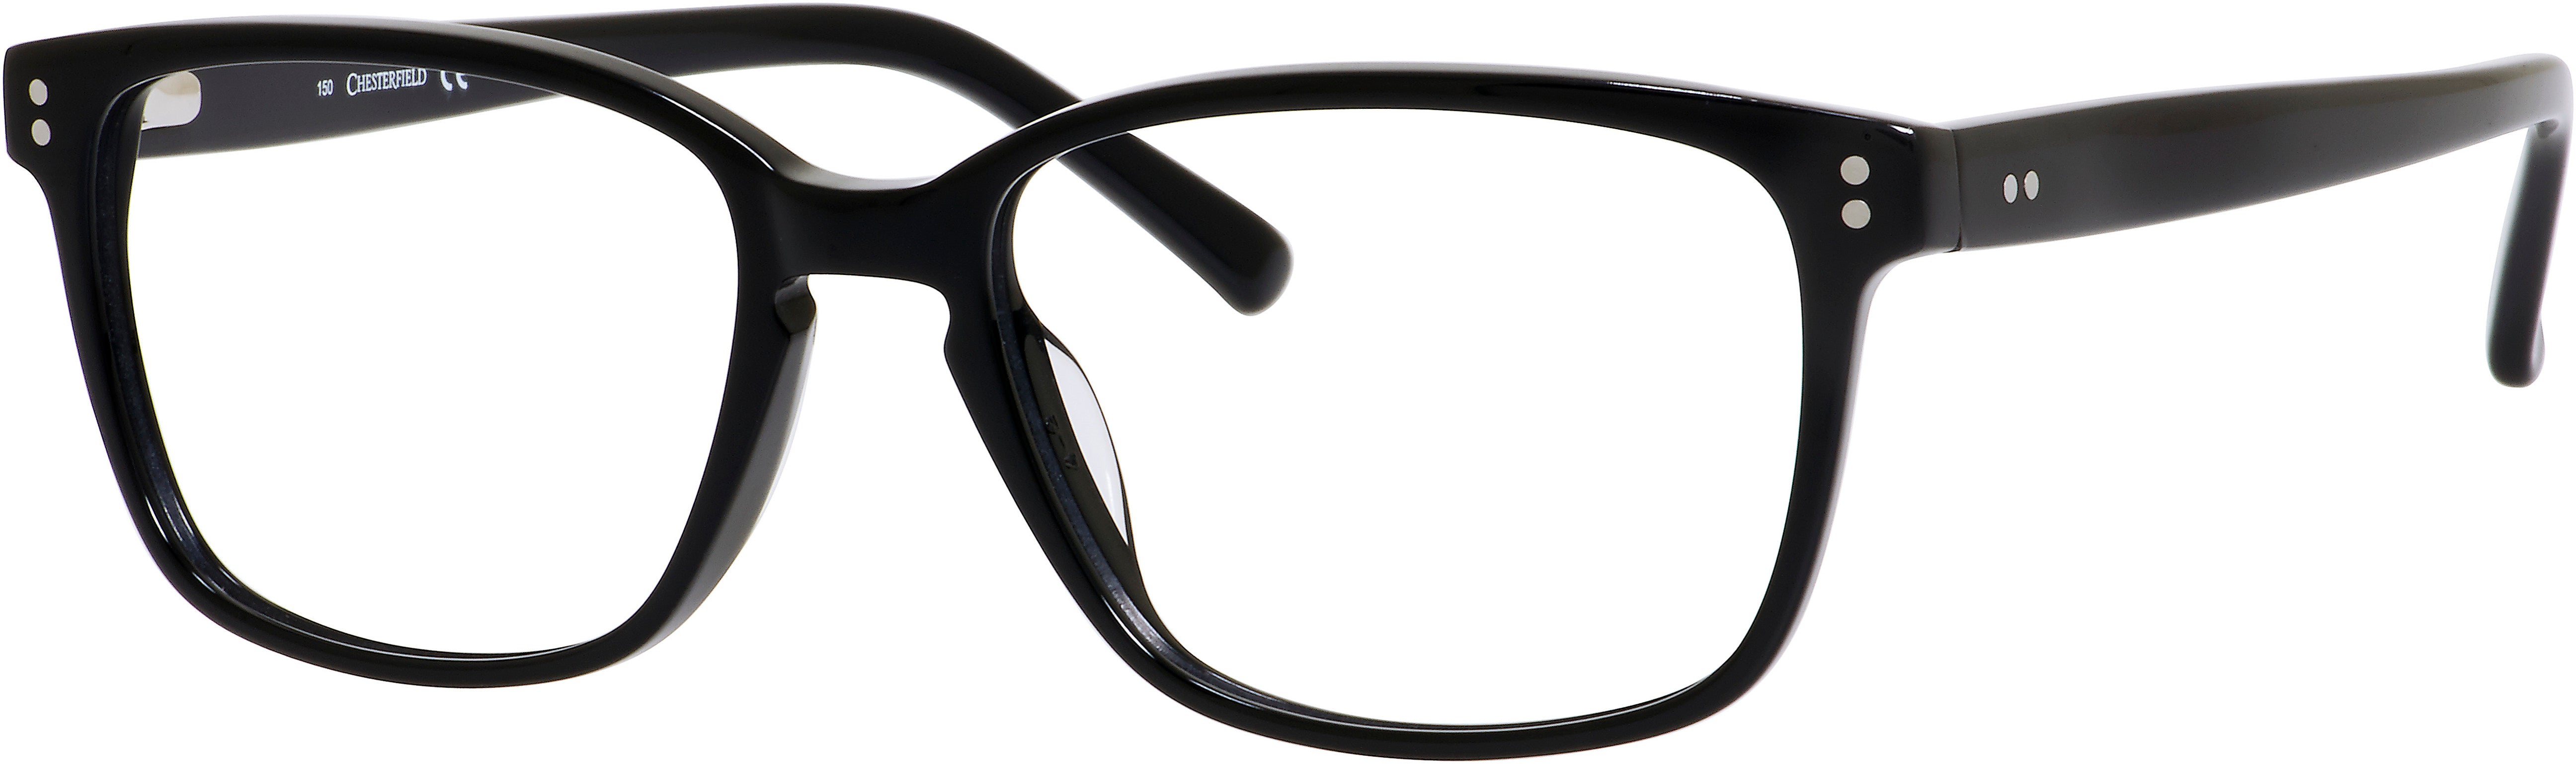  Chesterfield 28 XL Rectangular Eyeglasses 0807-0807  Black (00 Demo Lens)